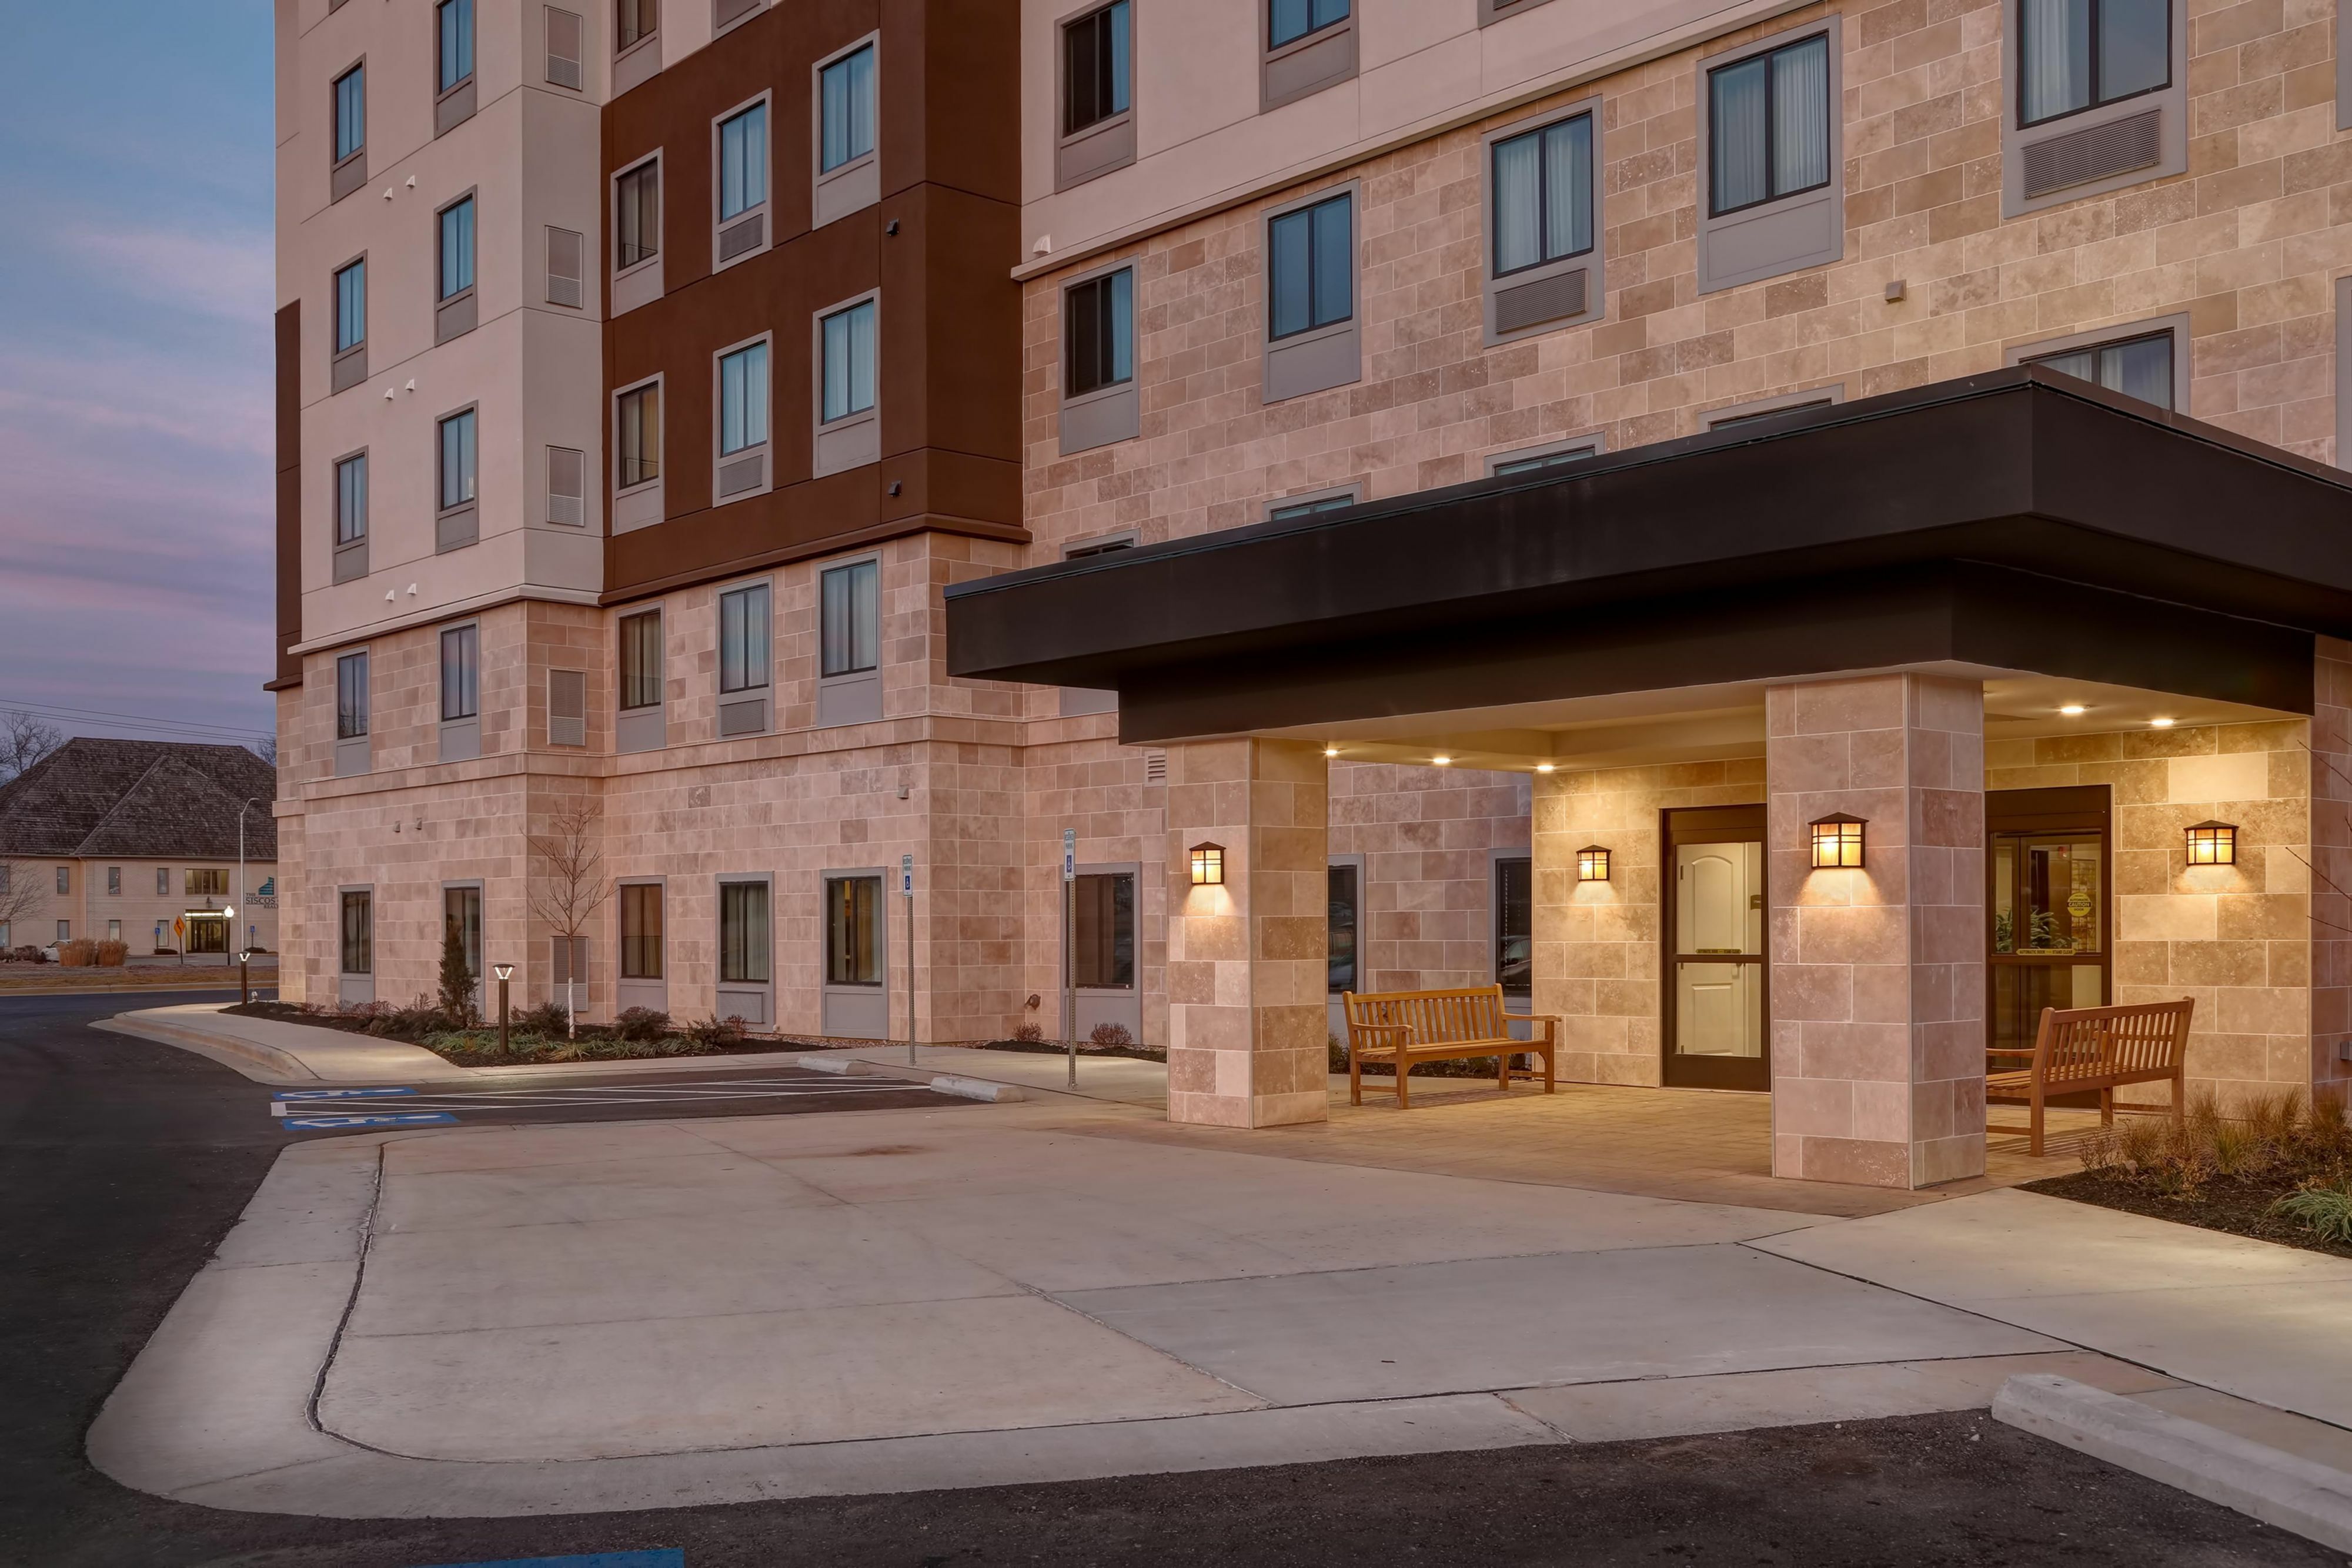 Photo of Staybridge Suites Overland Park-Kansas City Area, Leawood, KS